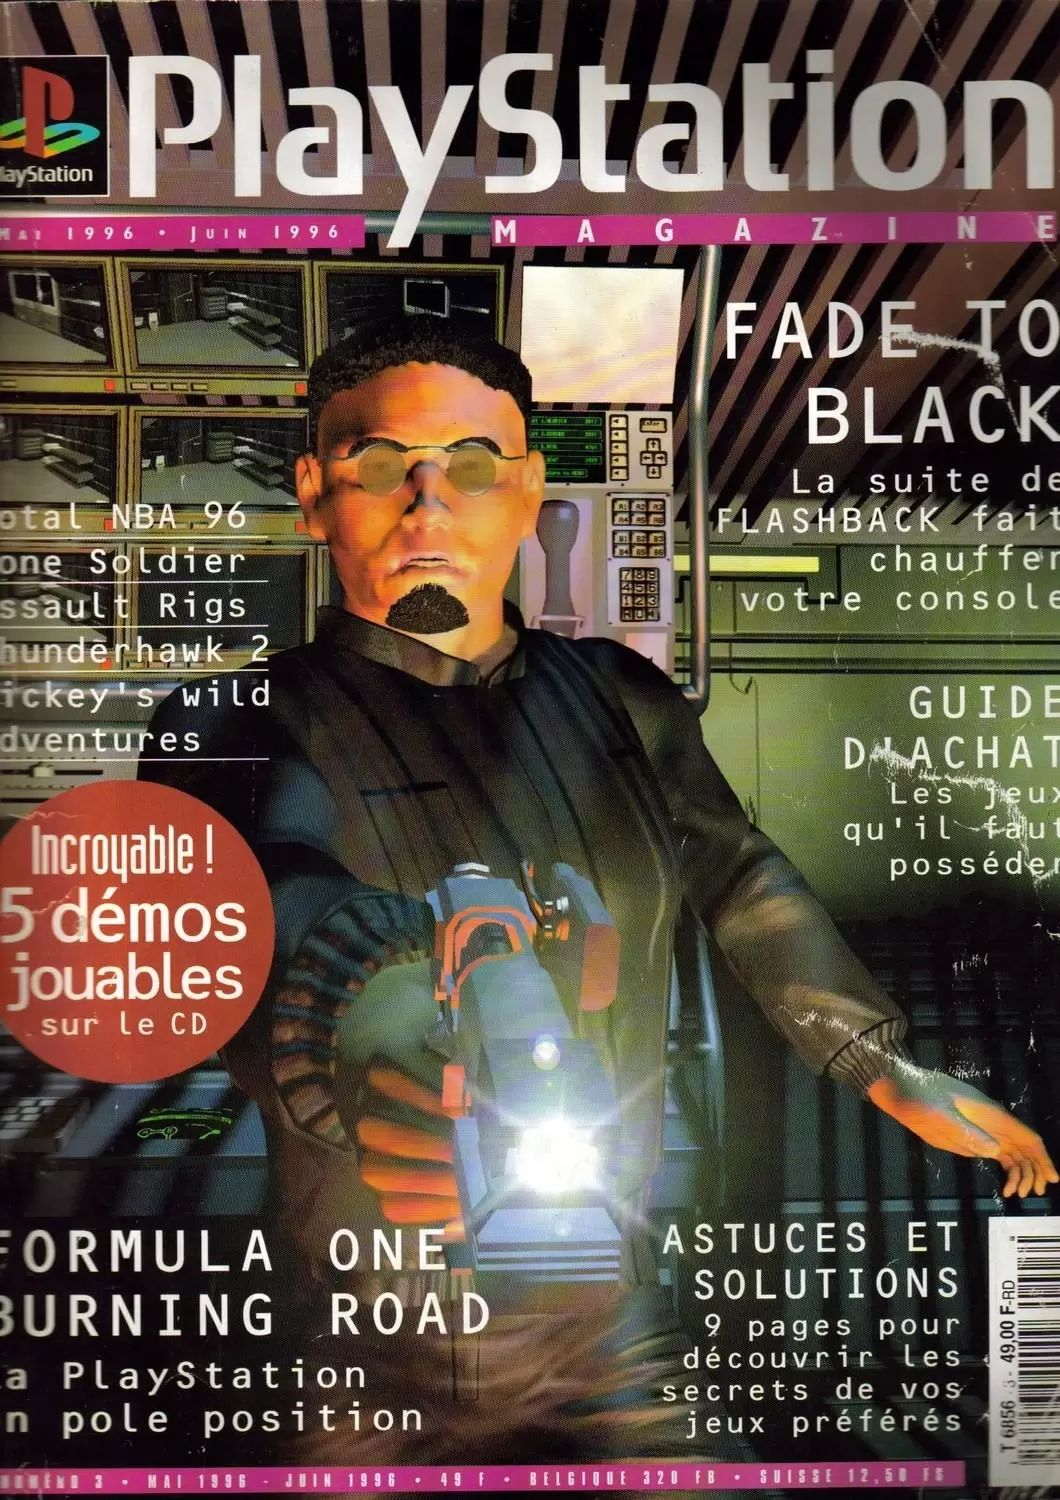 Playstation Magazine - Playstation Magazine #03